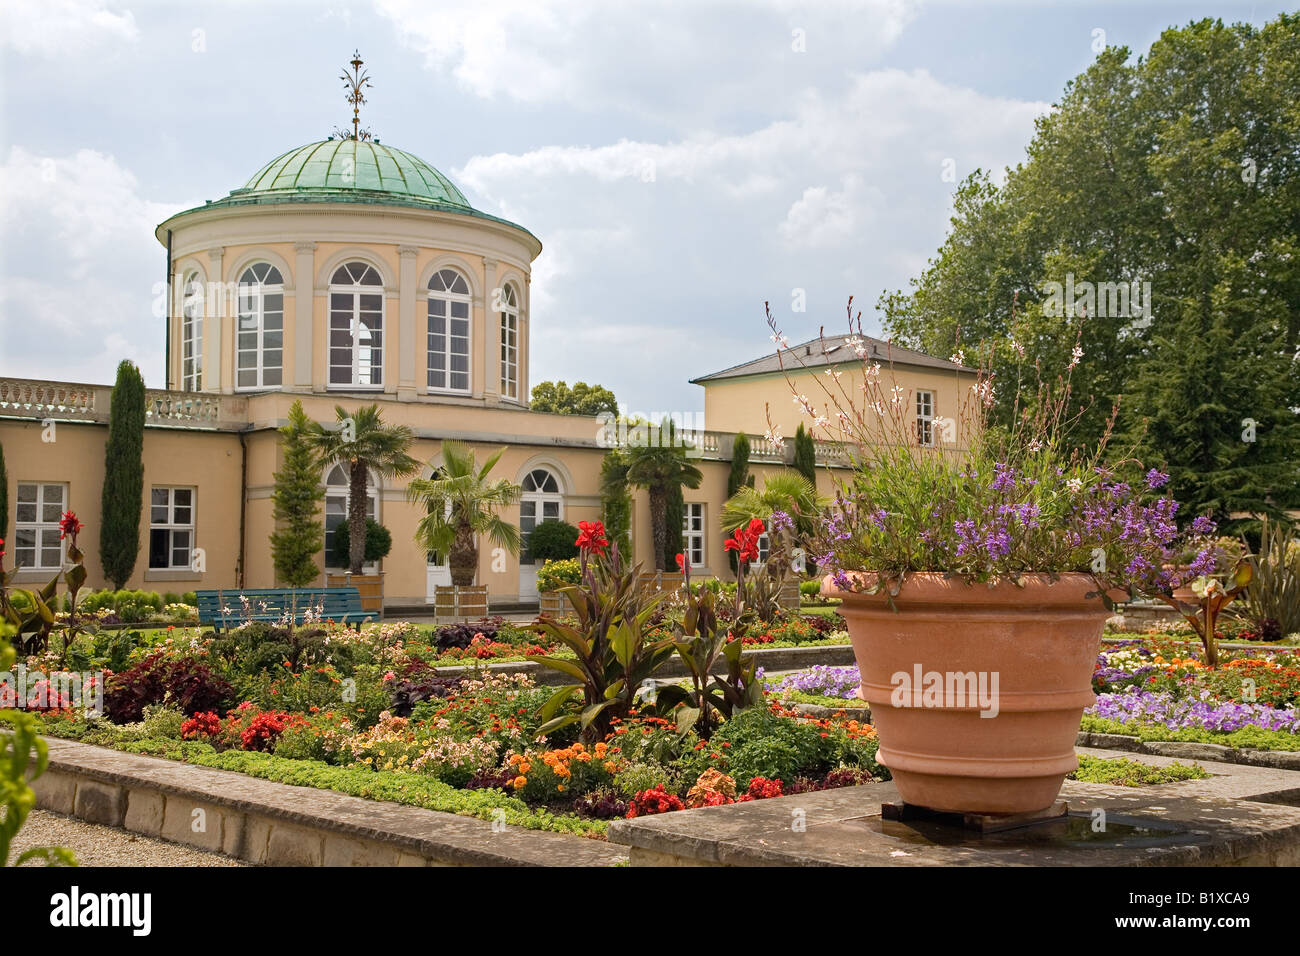 Der Botanische Garten in den königlichen Gärten von Herrenhausen, Hannover, Deutschland Stockfoto